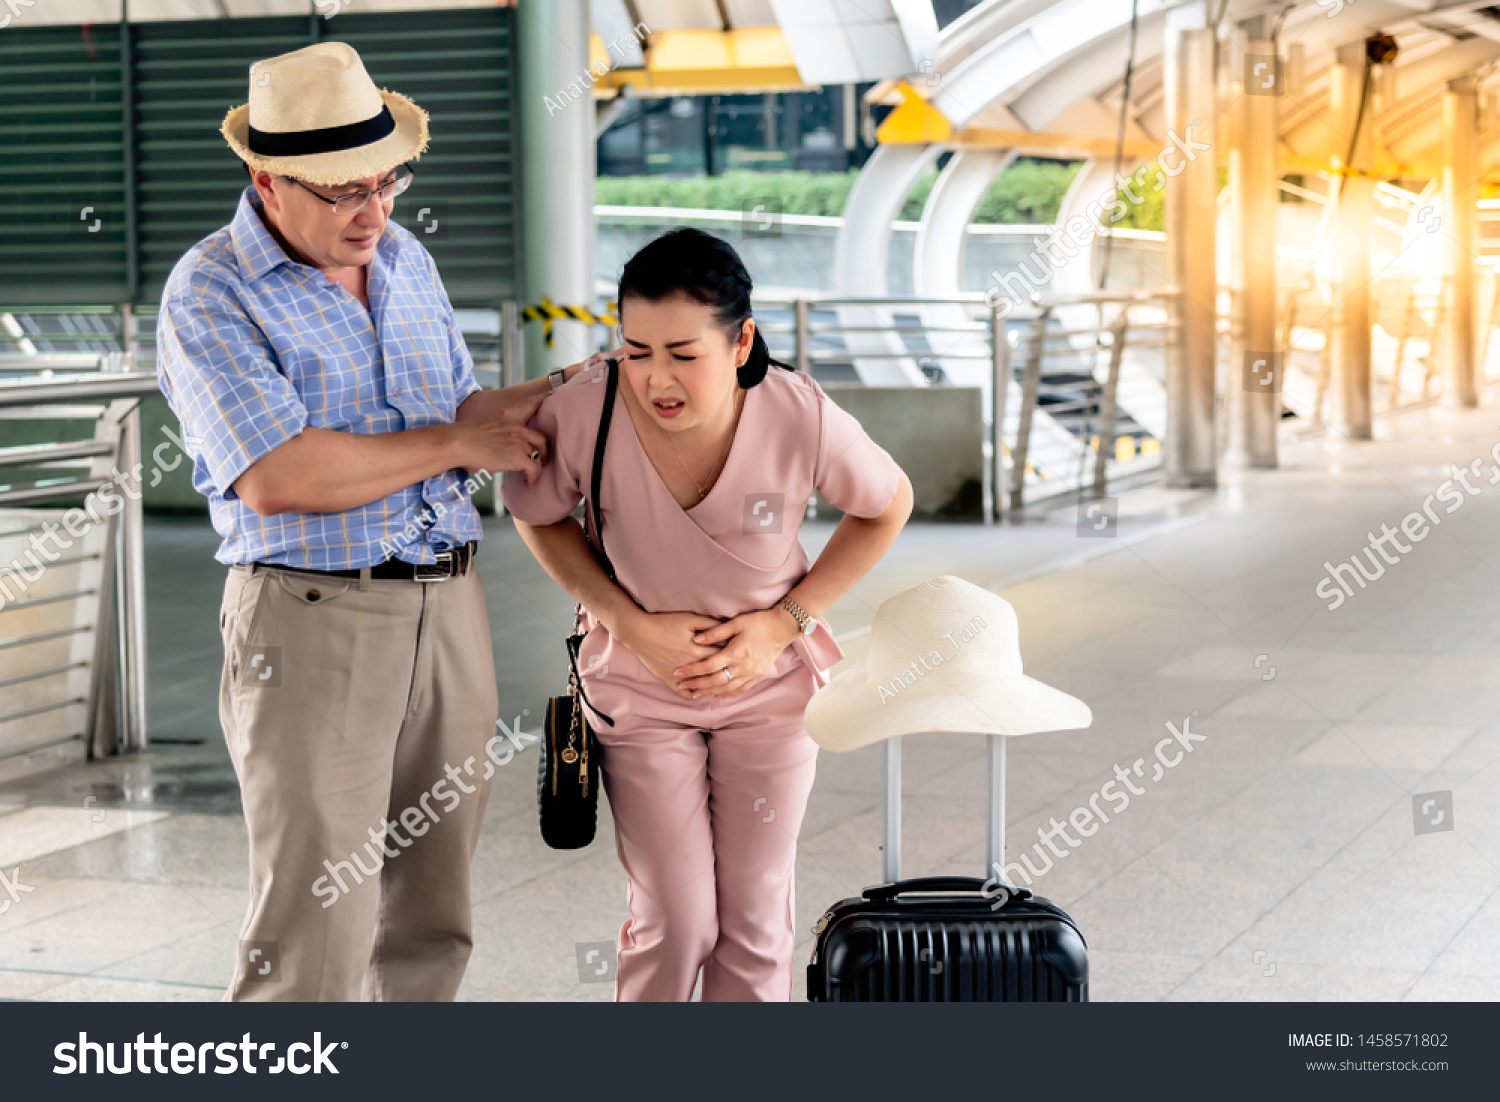 Asian Old Man Having Knee Injury Stock